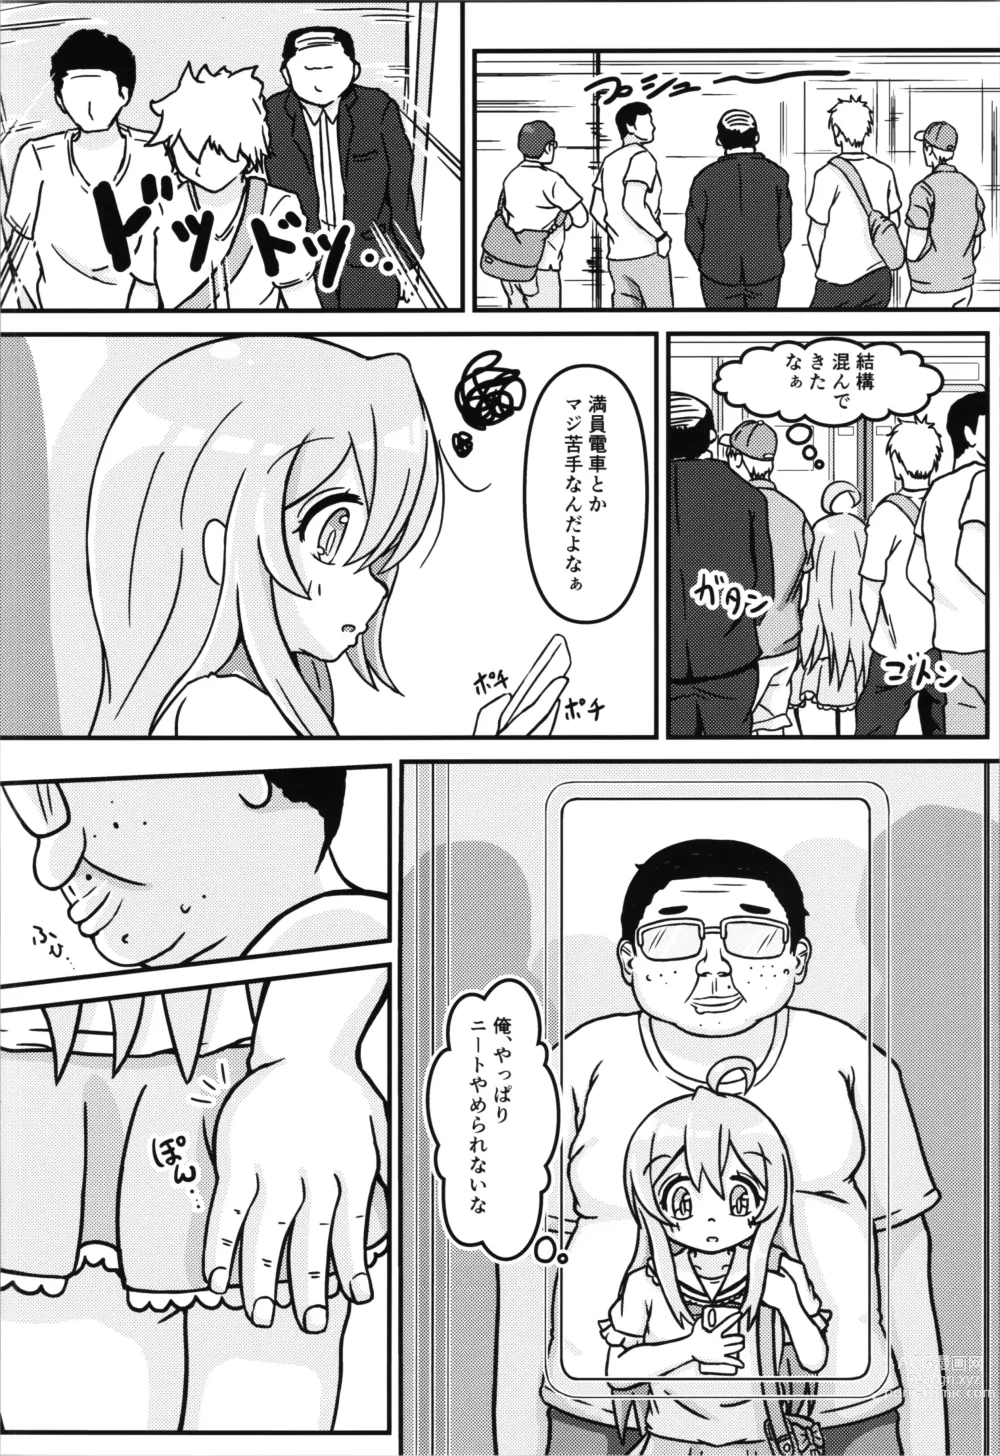 Page 6 of doujinshi Mahiro-chans bouncy ××× experience